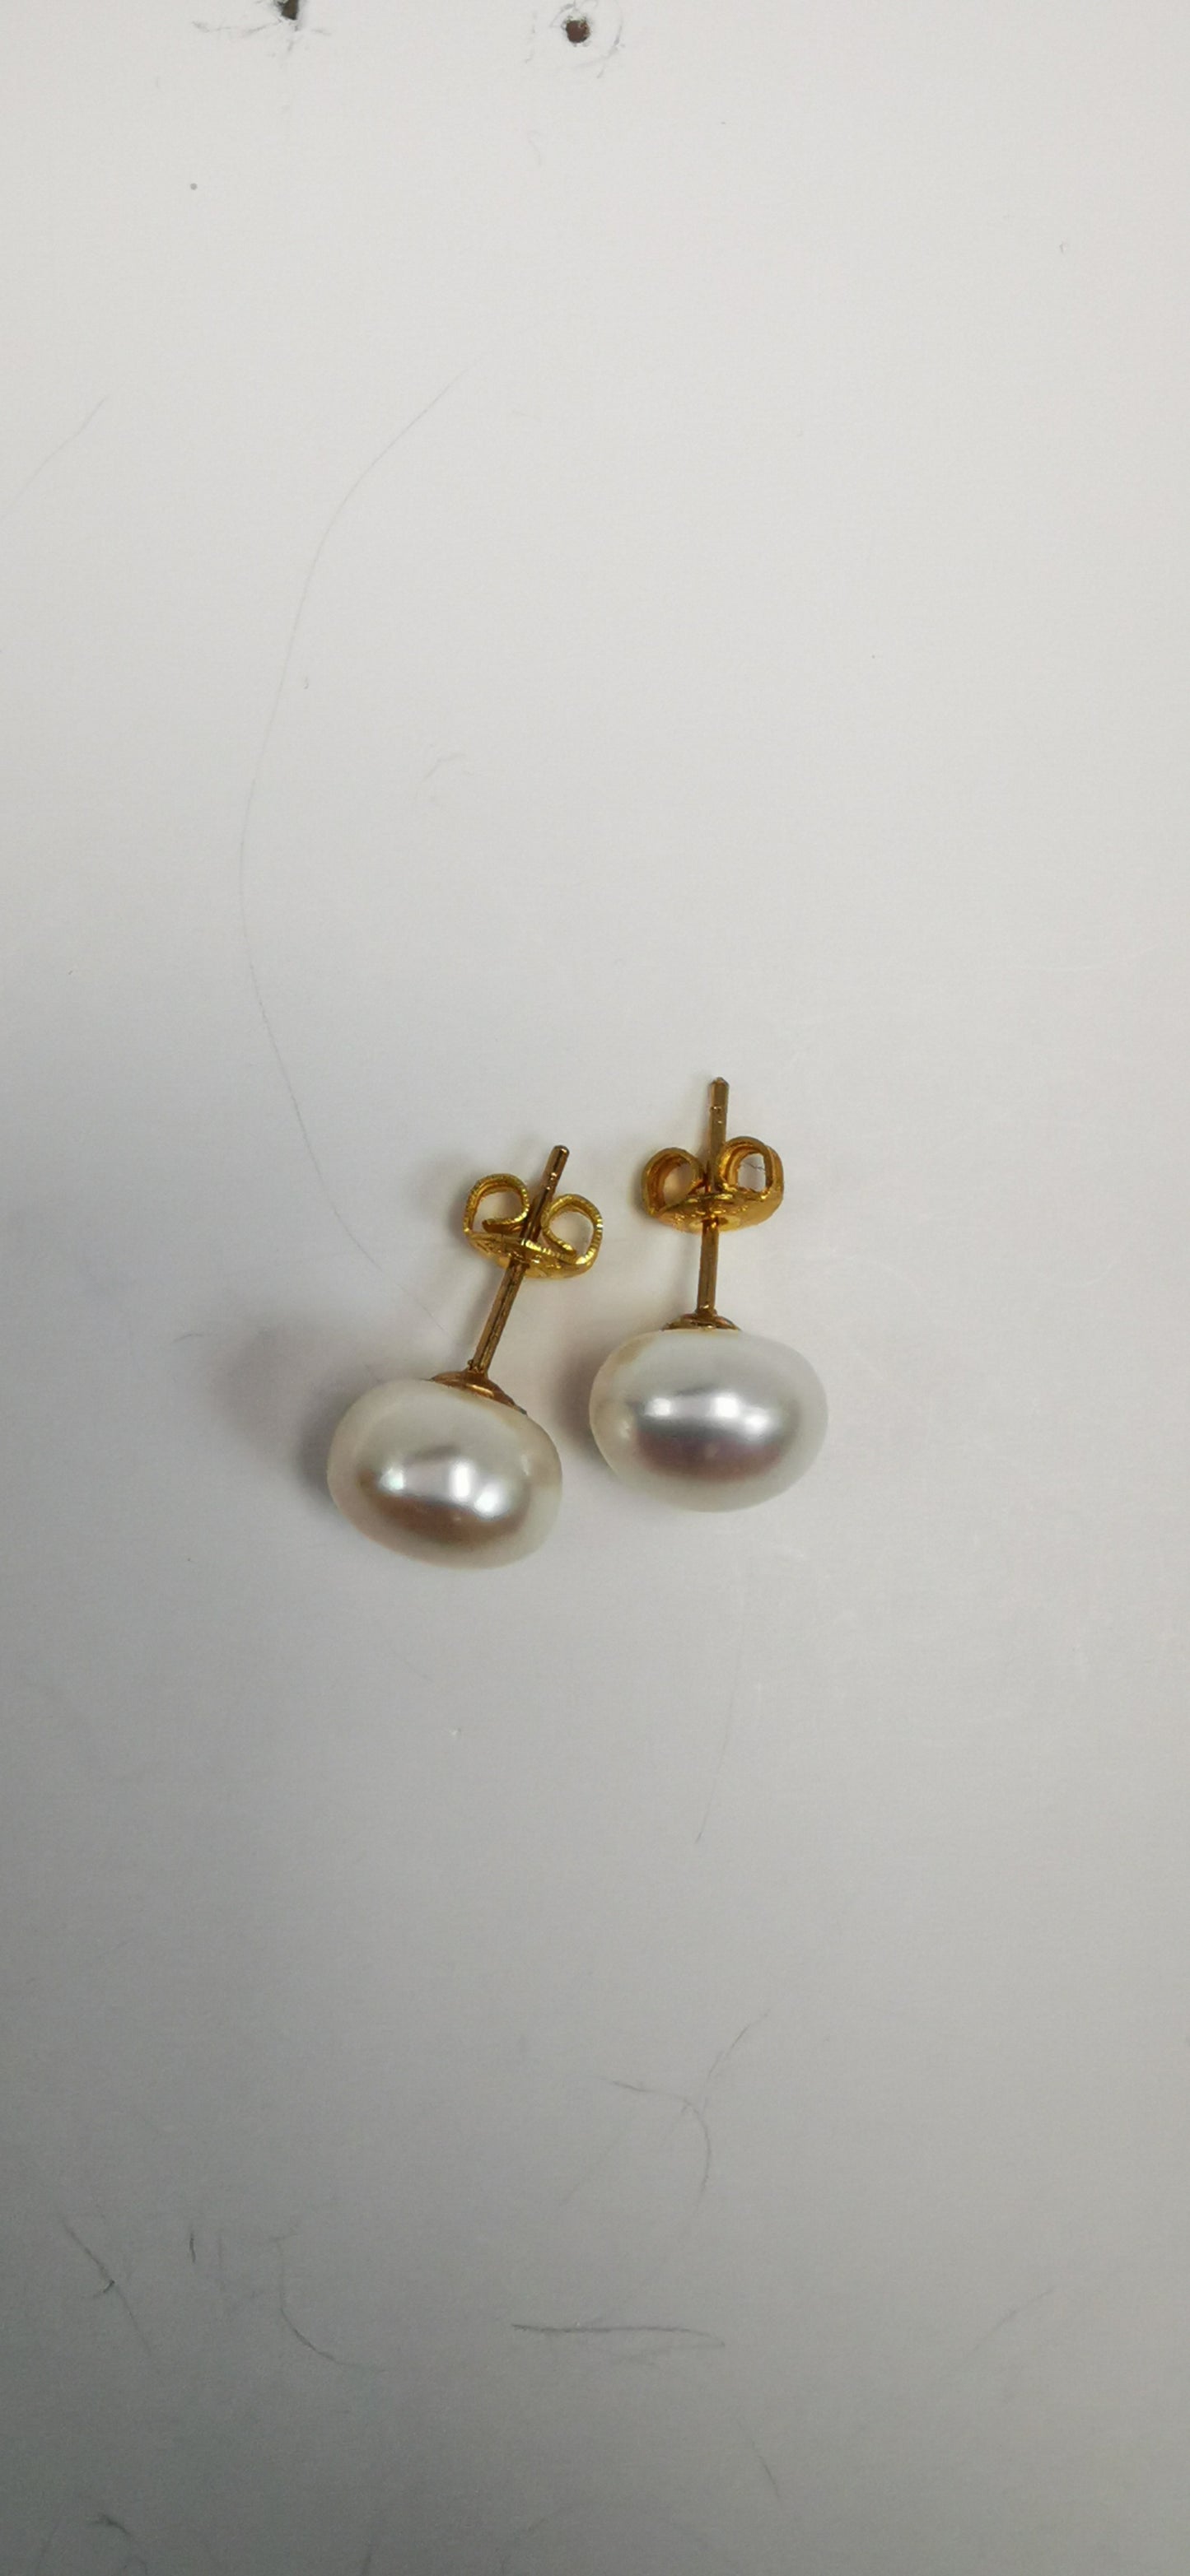 Boucles d'oreilles perles de culture blanches 9mm montées sur clous plaqués or. Présentées cote à cote, perles en bas, posées sur un fond blanc. Vue de dessus en plan large.